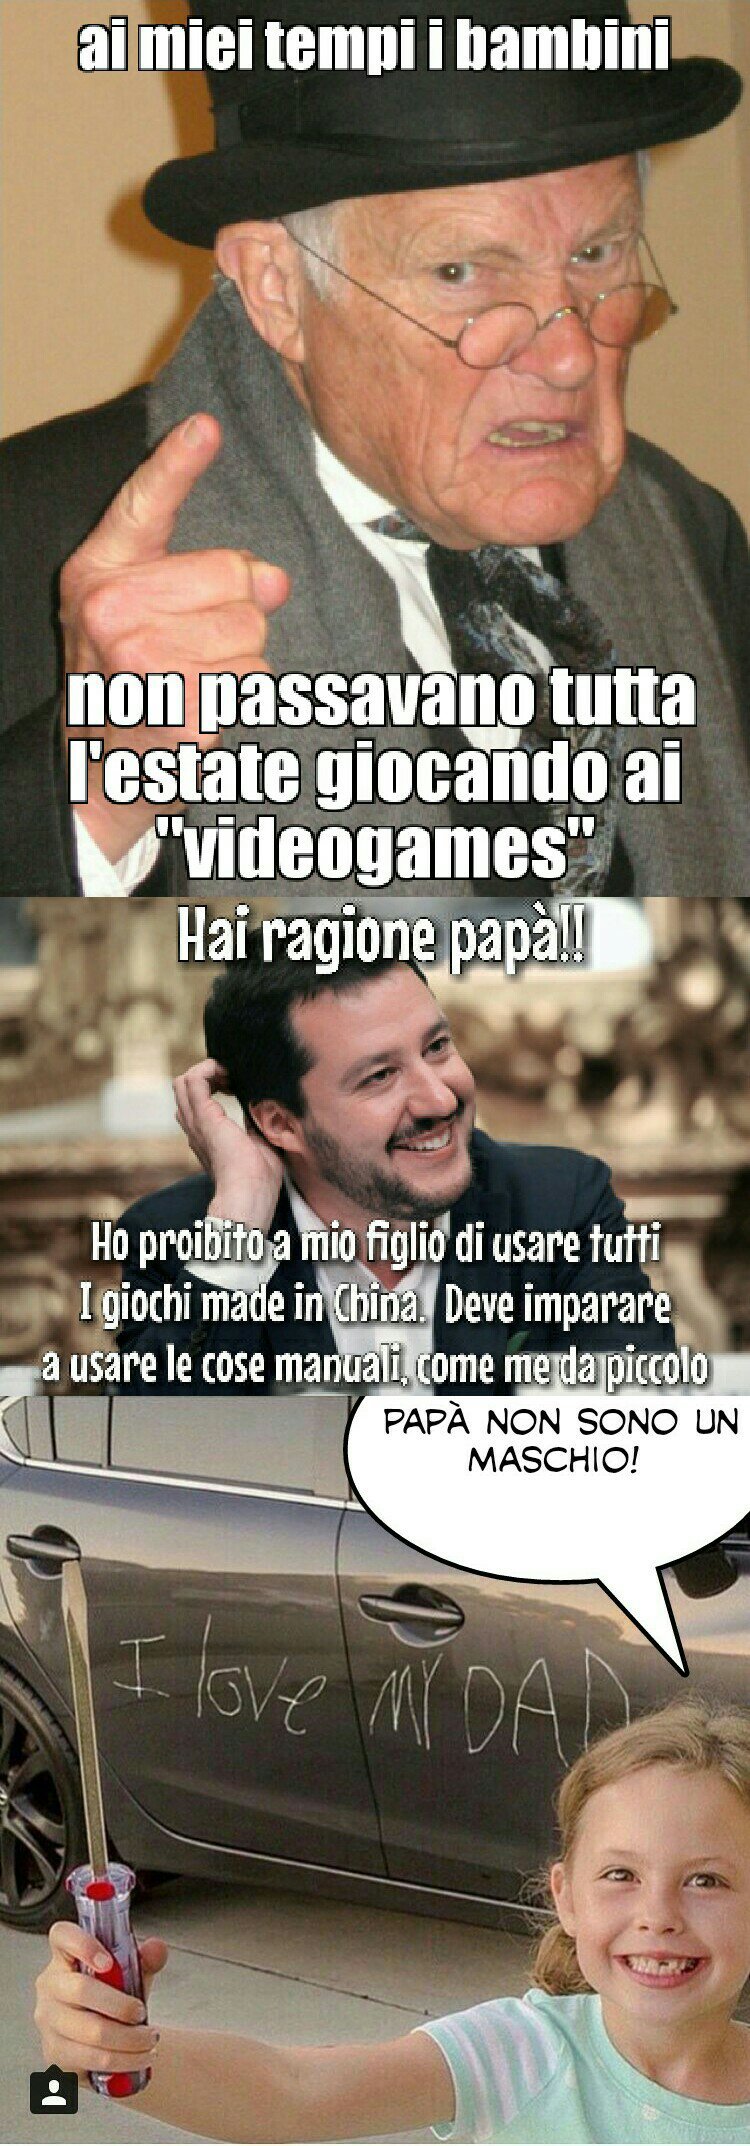 Salvini summer raduno, generazioni a confronto - meme